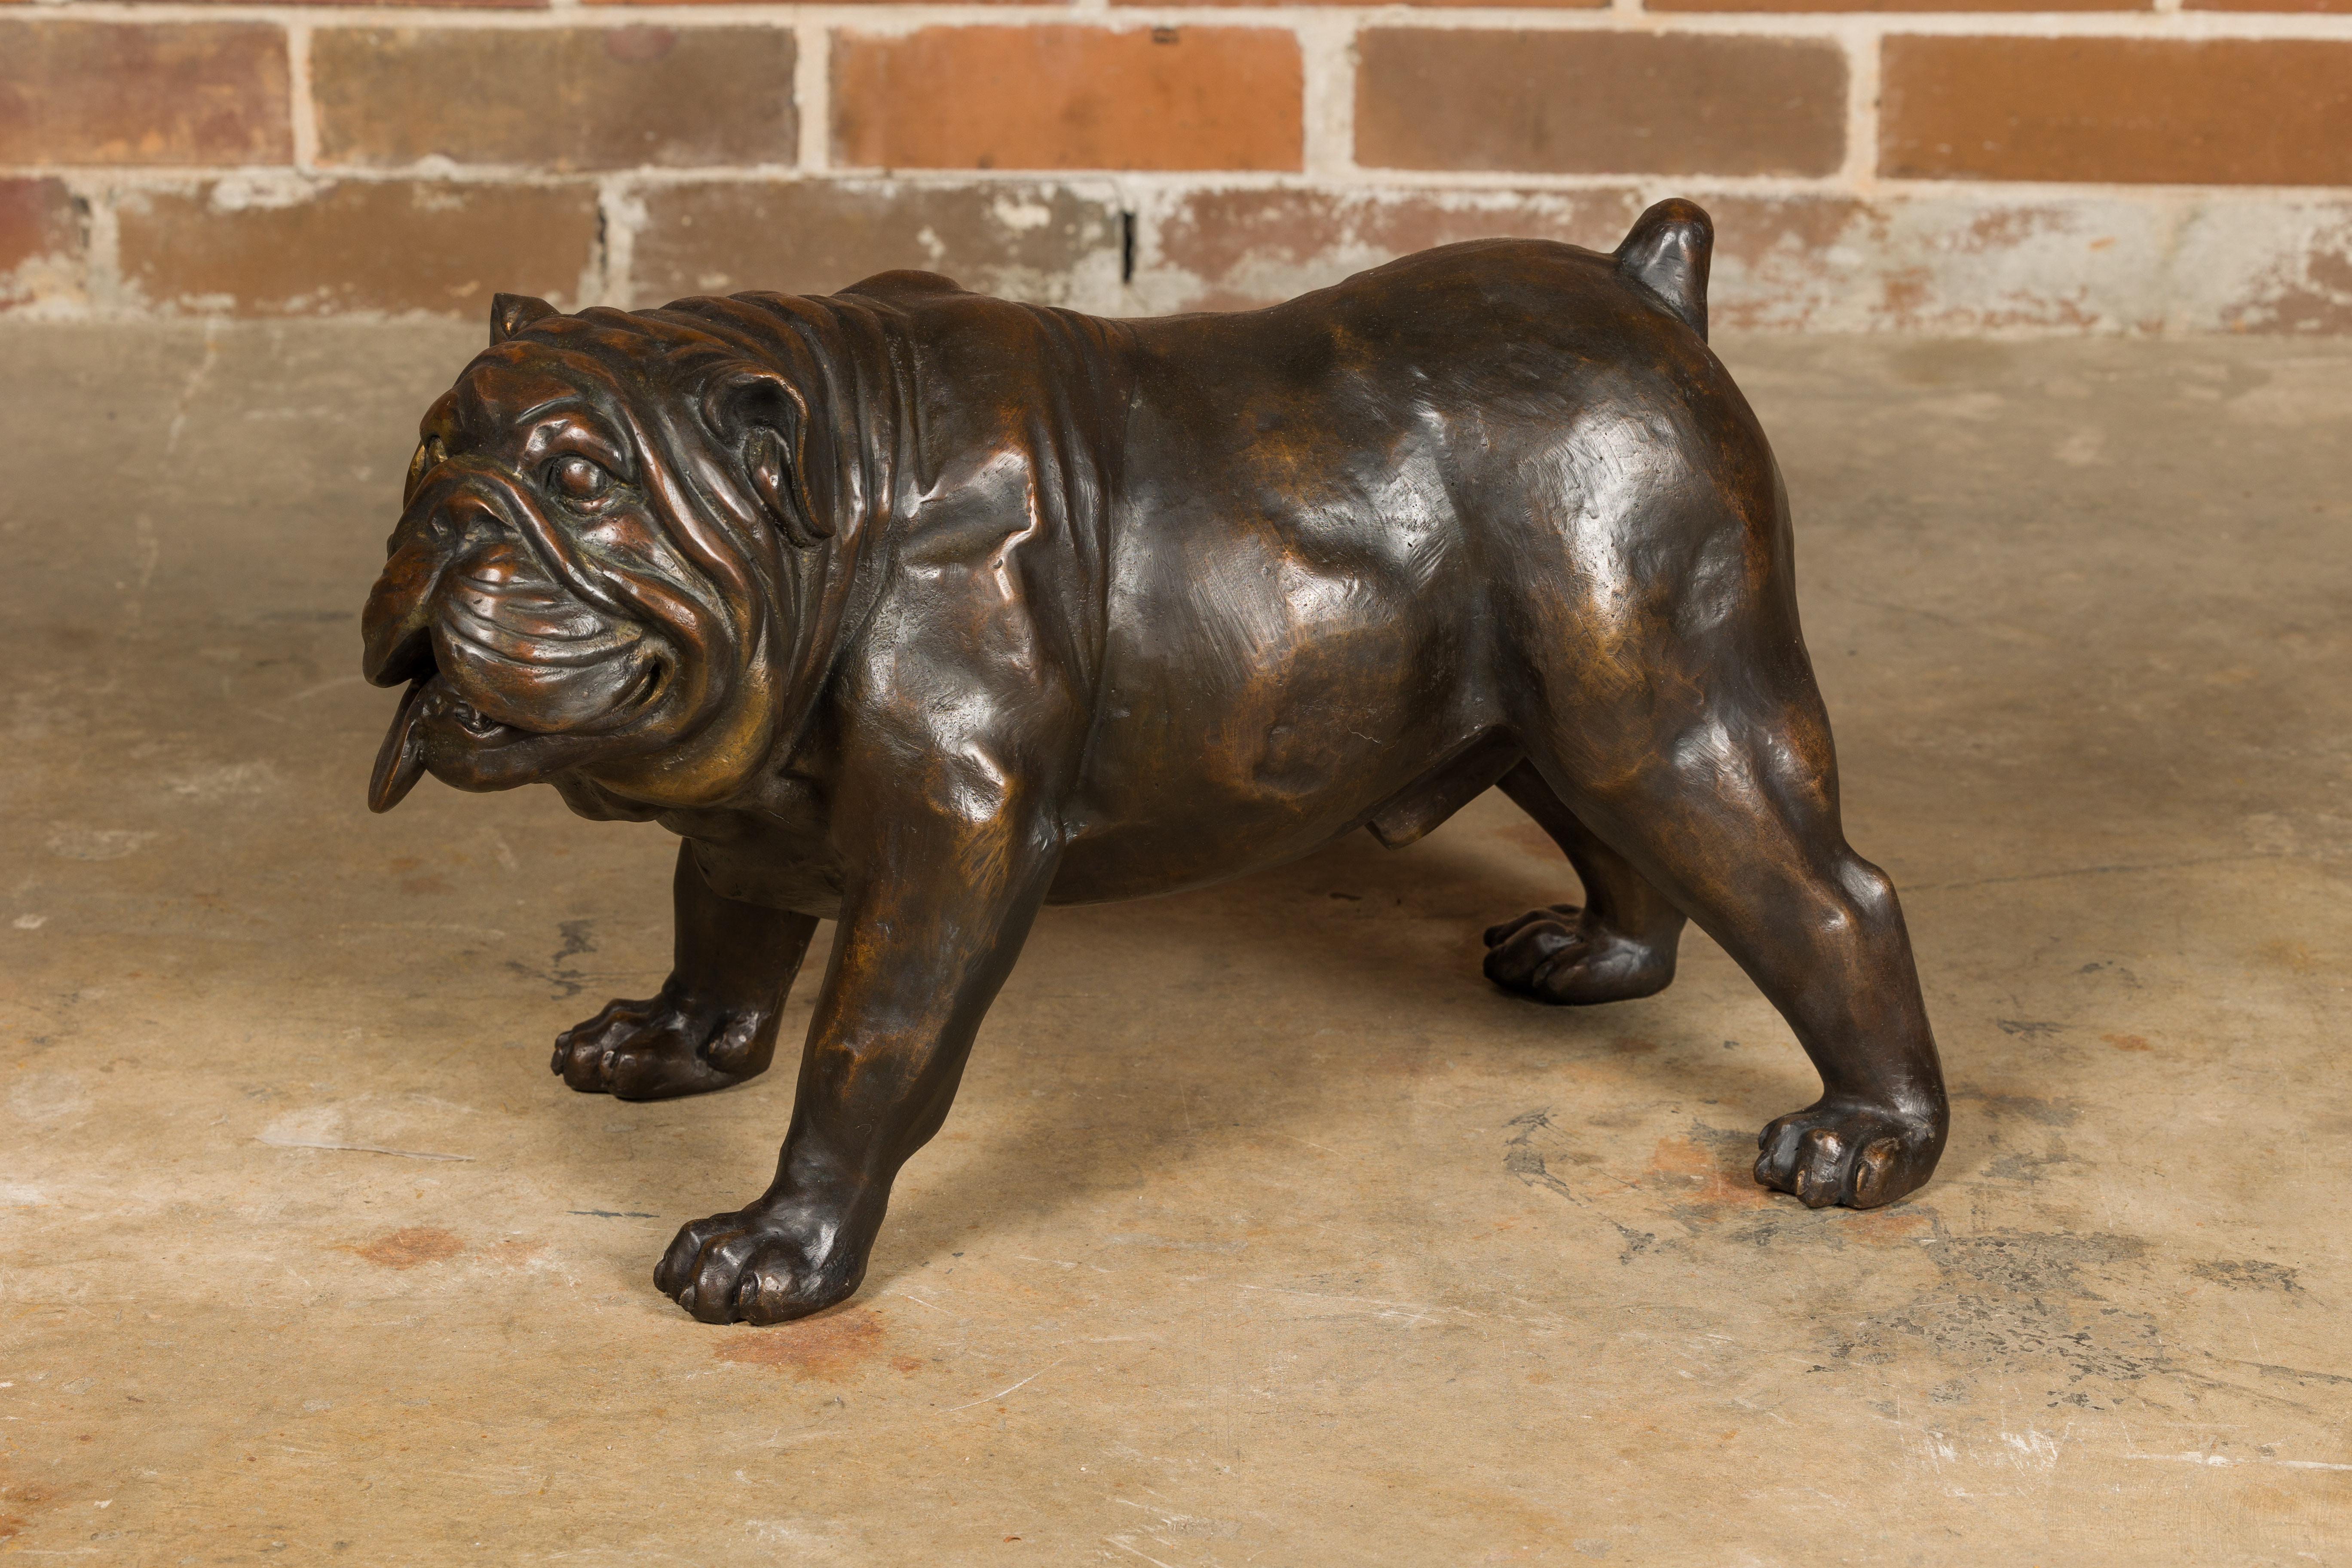 Eine lebensgroße Bronzeskulptur einer Bulldogge im Vintage-Stil, amerikanische Kunst. Dieses amerikanische Vintage-Kunstwerk, eine lebensgroße Bronzeskulptur einer Bulldogge, strahlt Charakter und Charme aus. Die Skulptur fängt das Wesen der